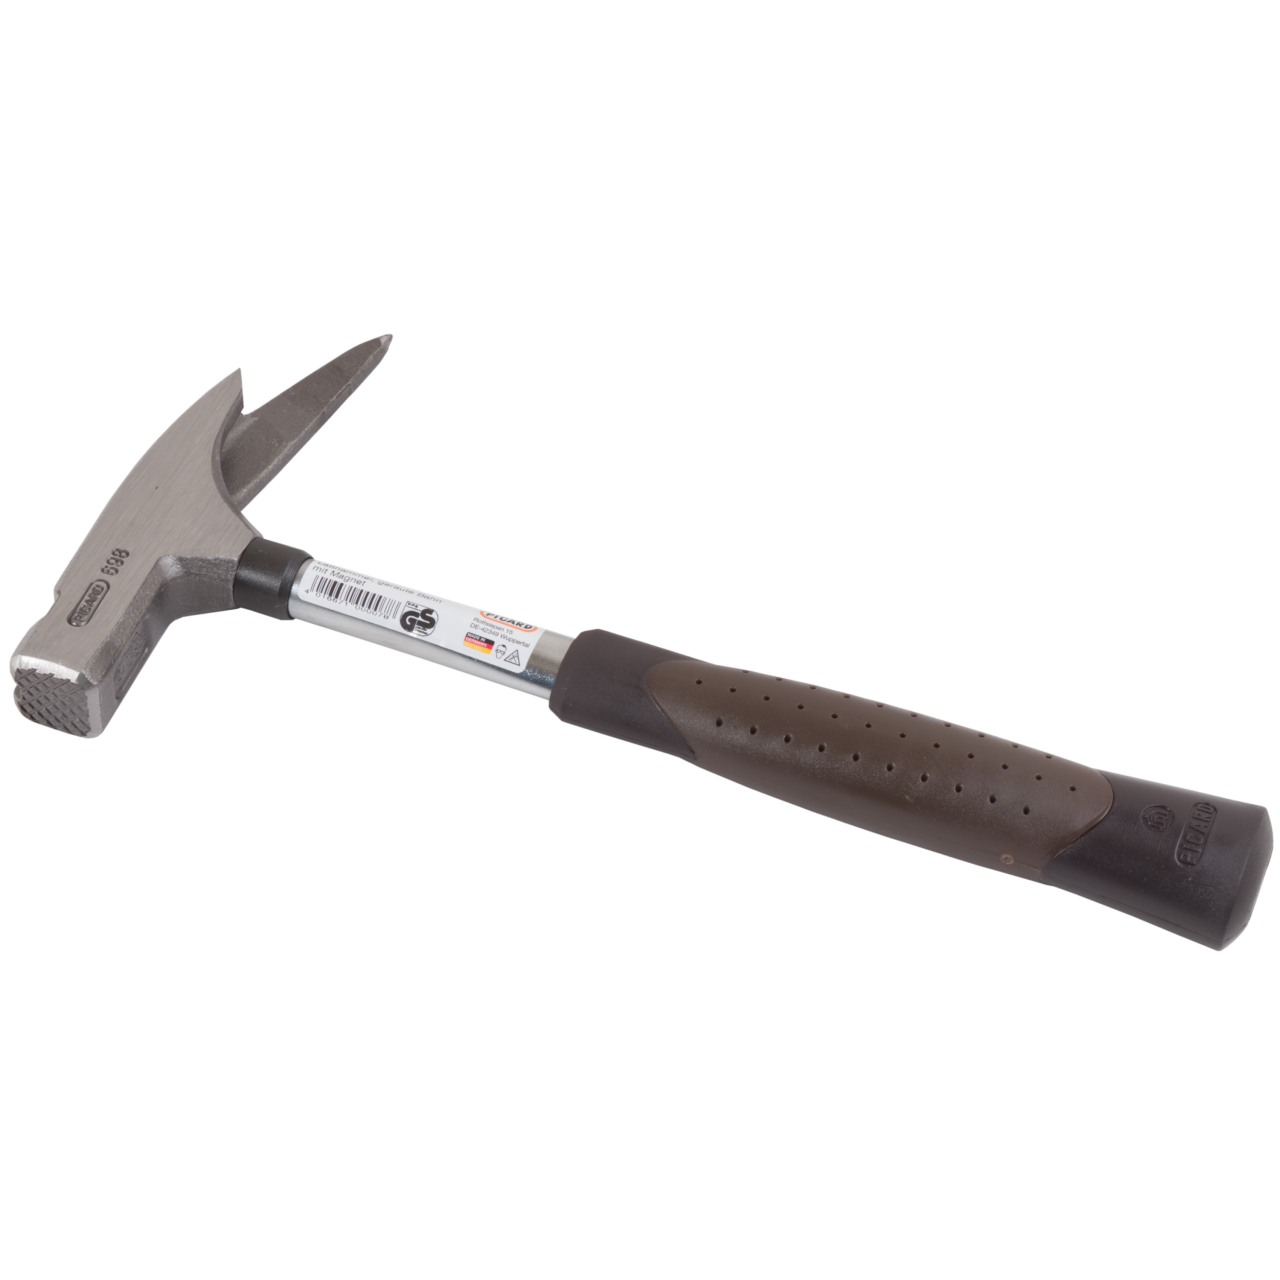 Latthammer Stahl 600 g